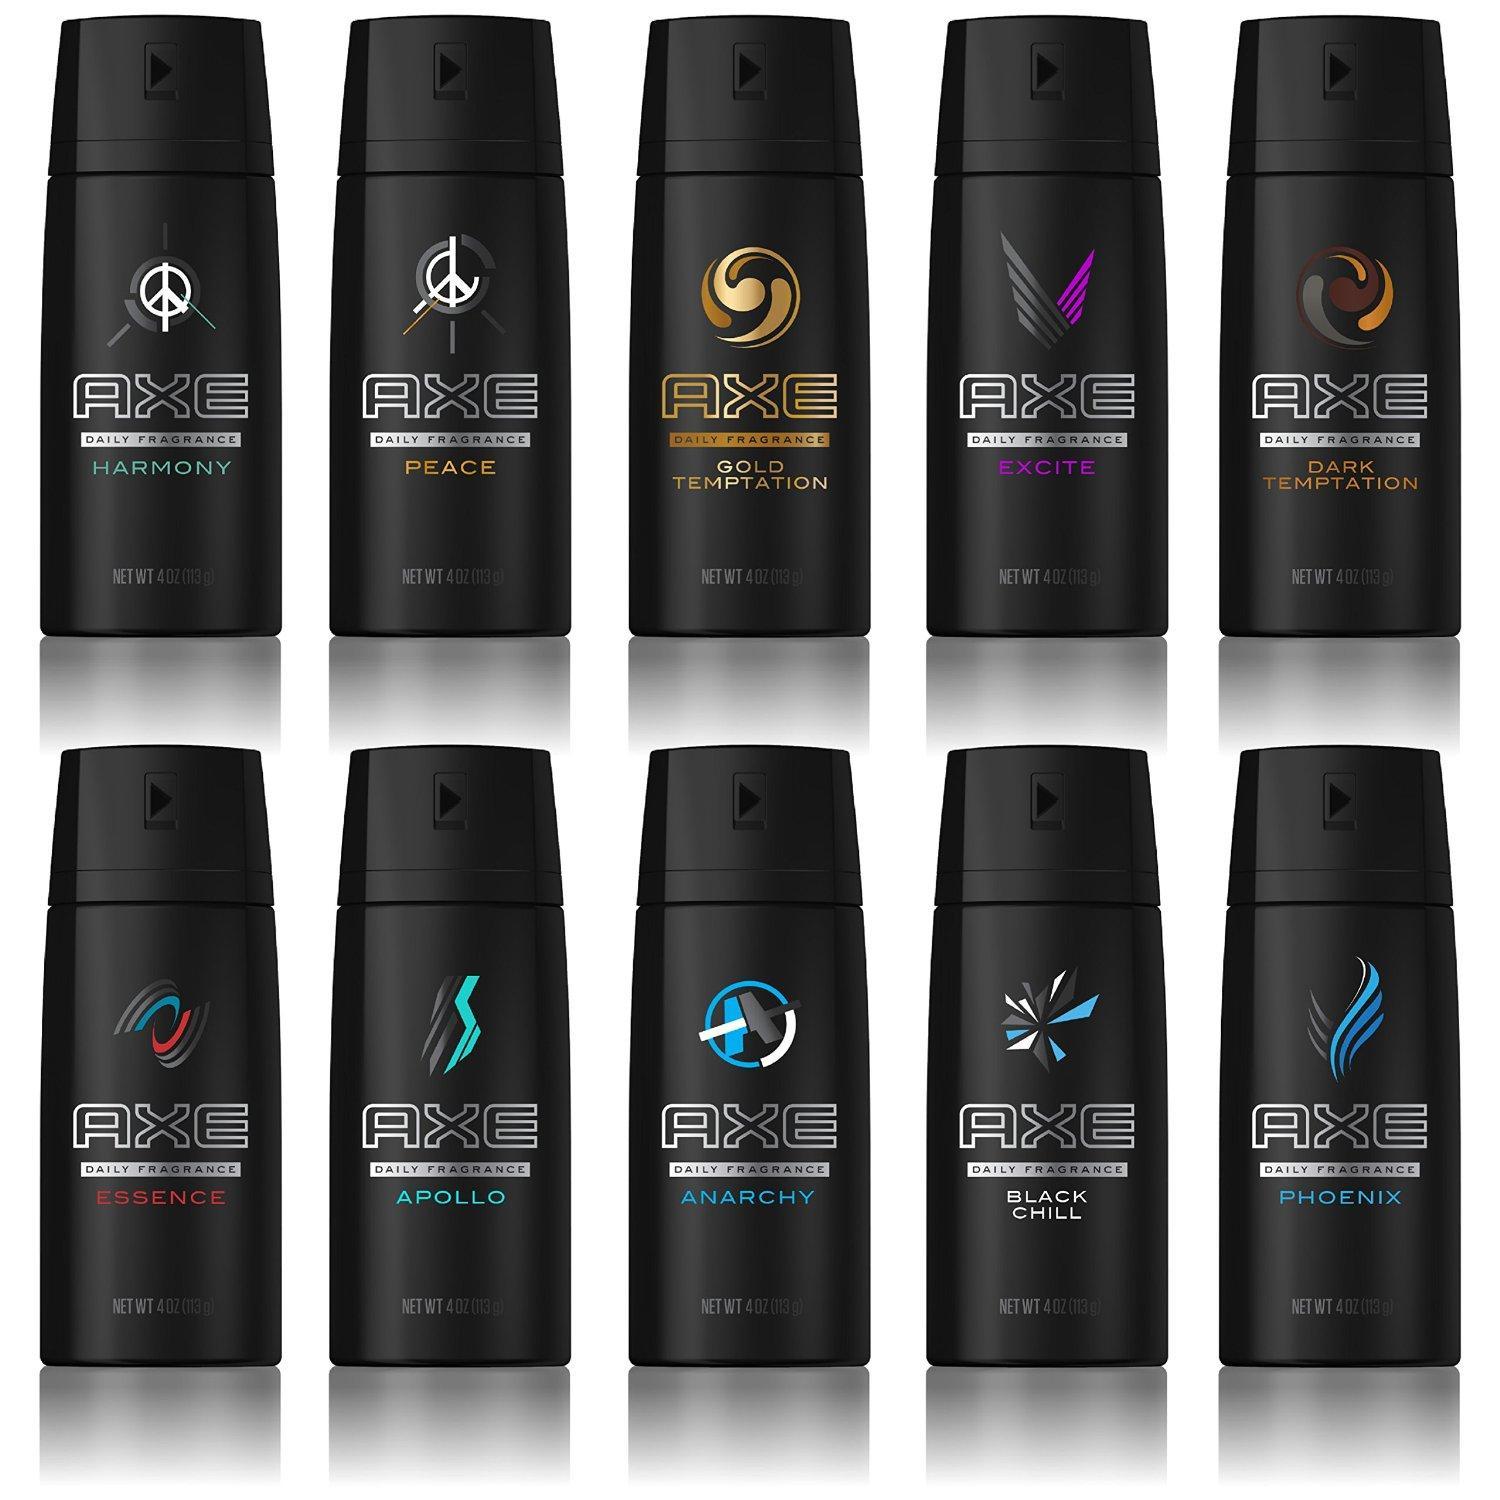 Axe Body Spray Logo - Amazon.com : AXE Body Spray for Men, Excite 4 oz, Twin Pack